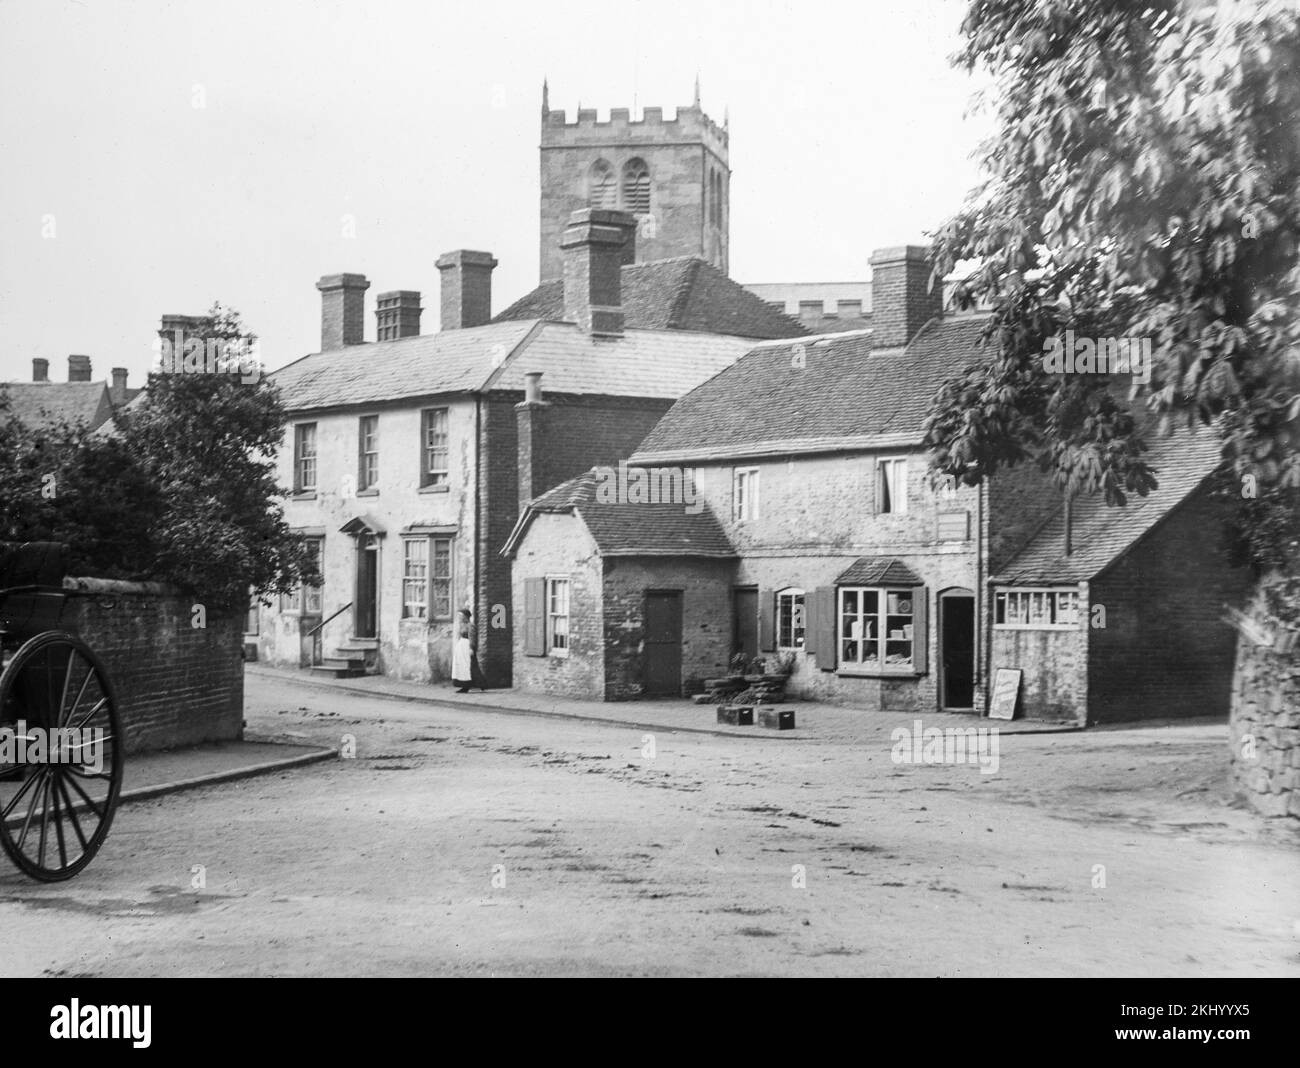 Una fotografía de finales del siglo 19th en blanco y negro que muestra un pueblo rural Inglés con su tienda e iglesia. Foto de stock